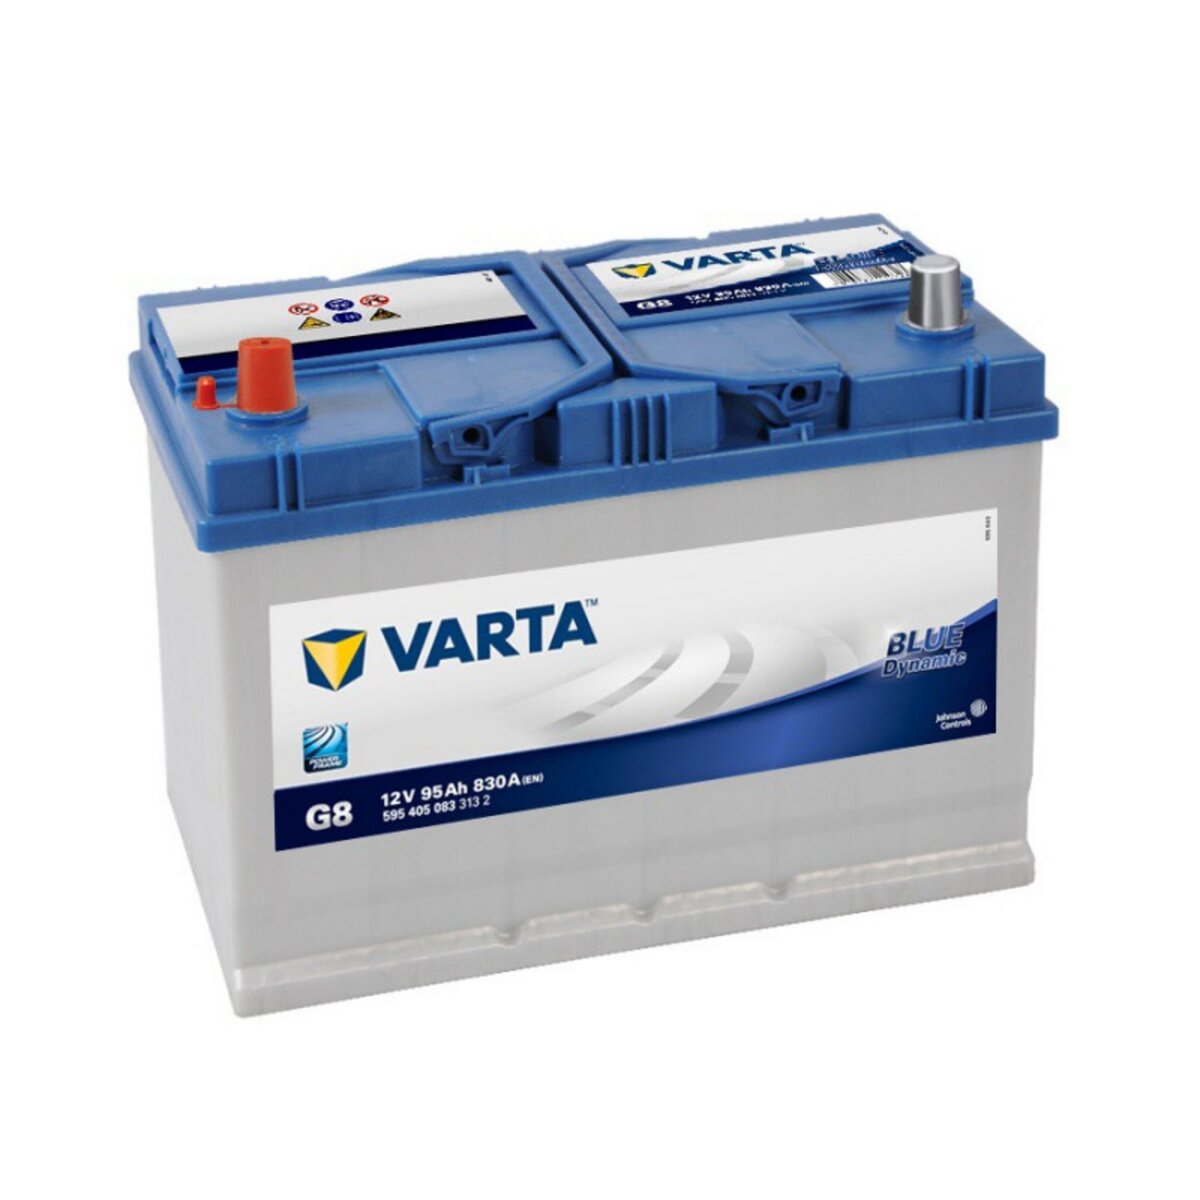 Varta Batterie Varta Blue Dynamic G8 12v 95ah 830A 595 405 083